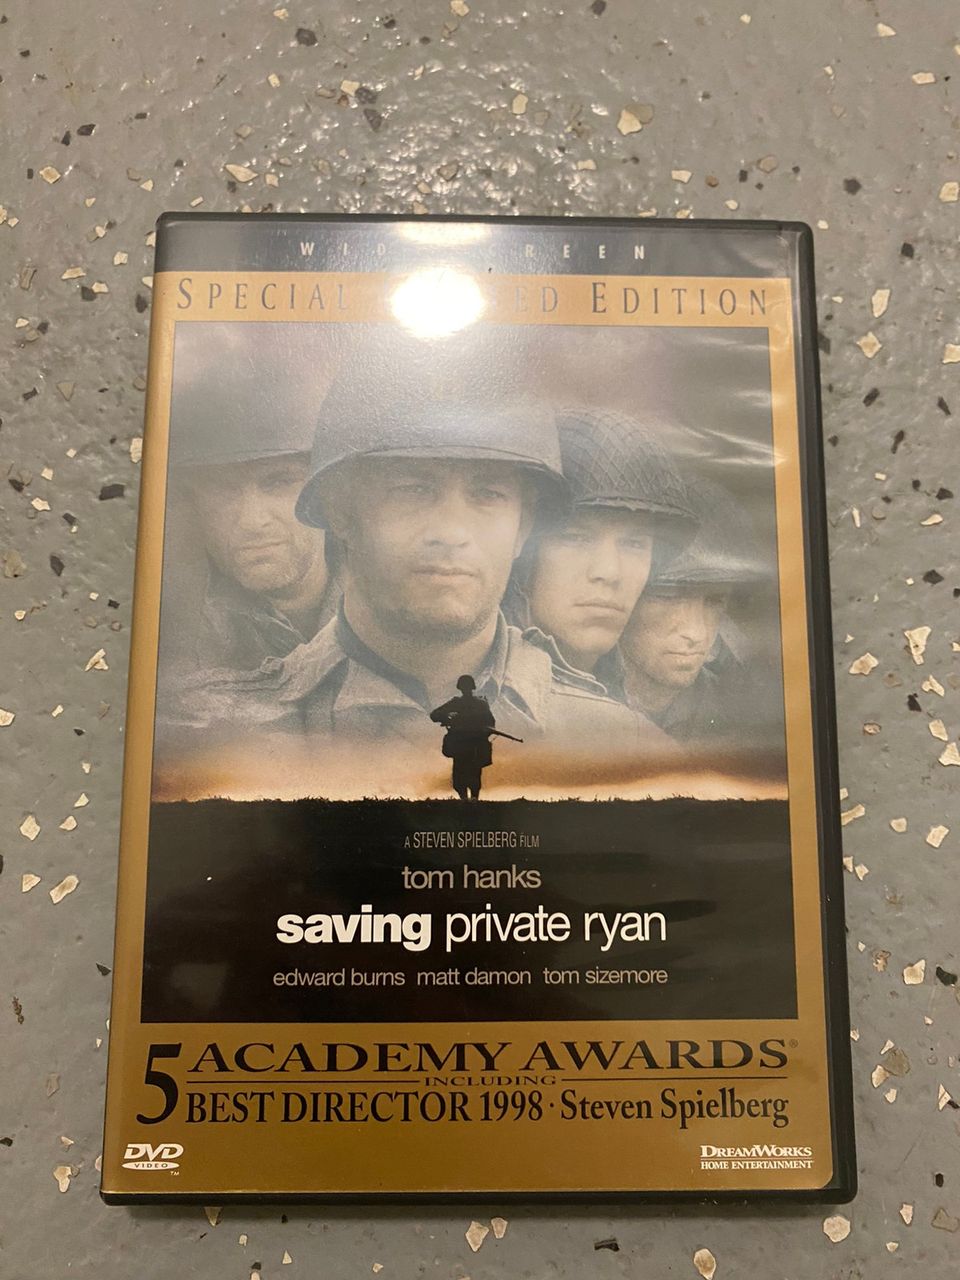 Saving private ryan dvd